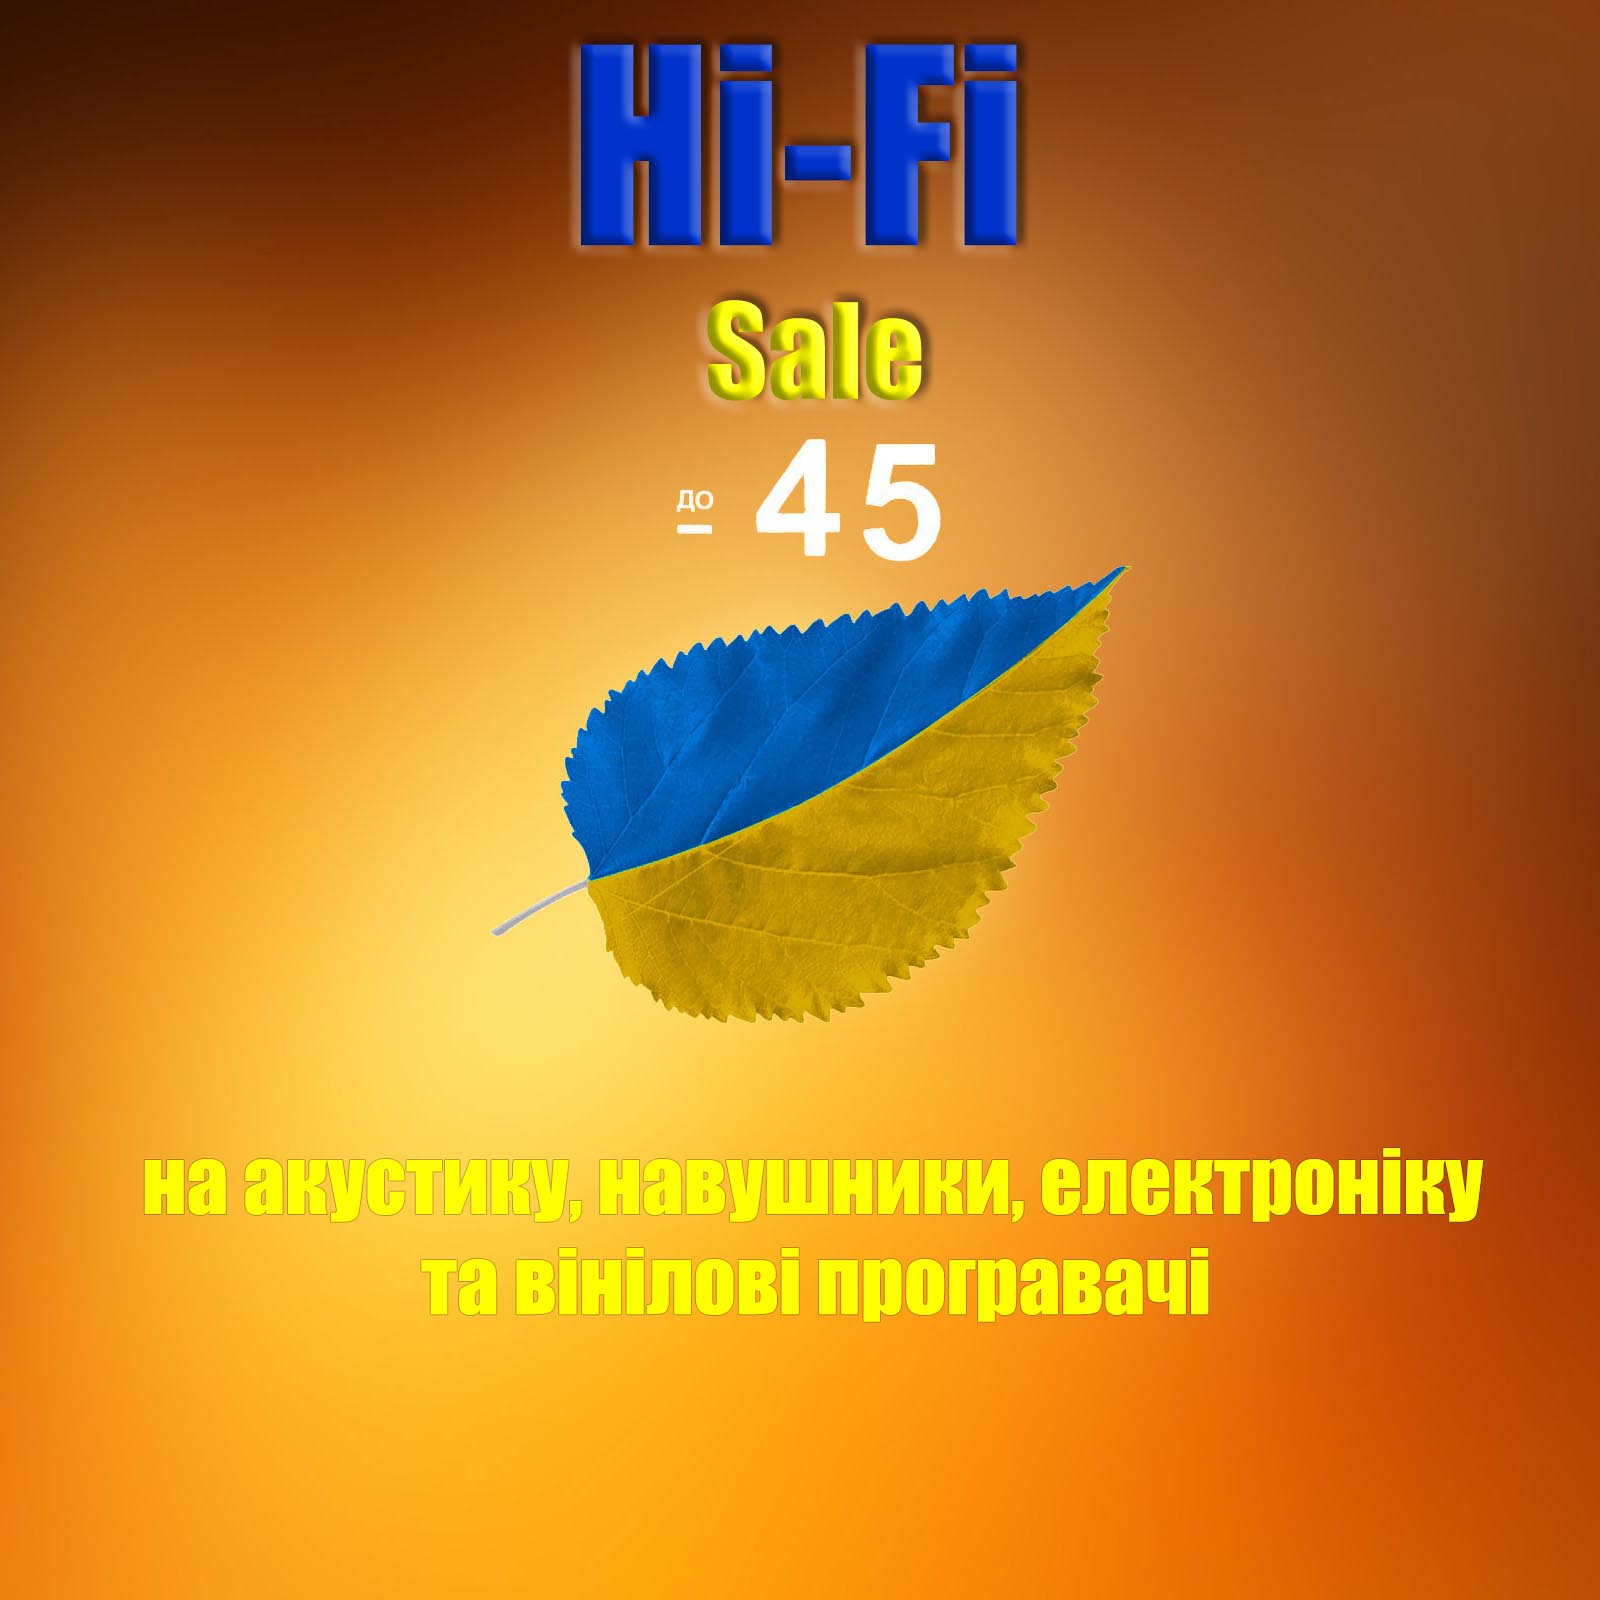 hifi-club.com.ua sale